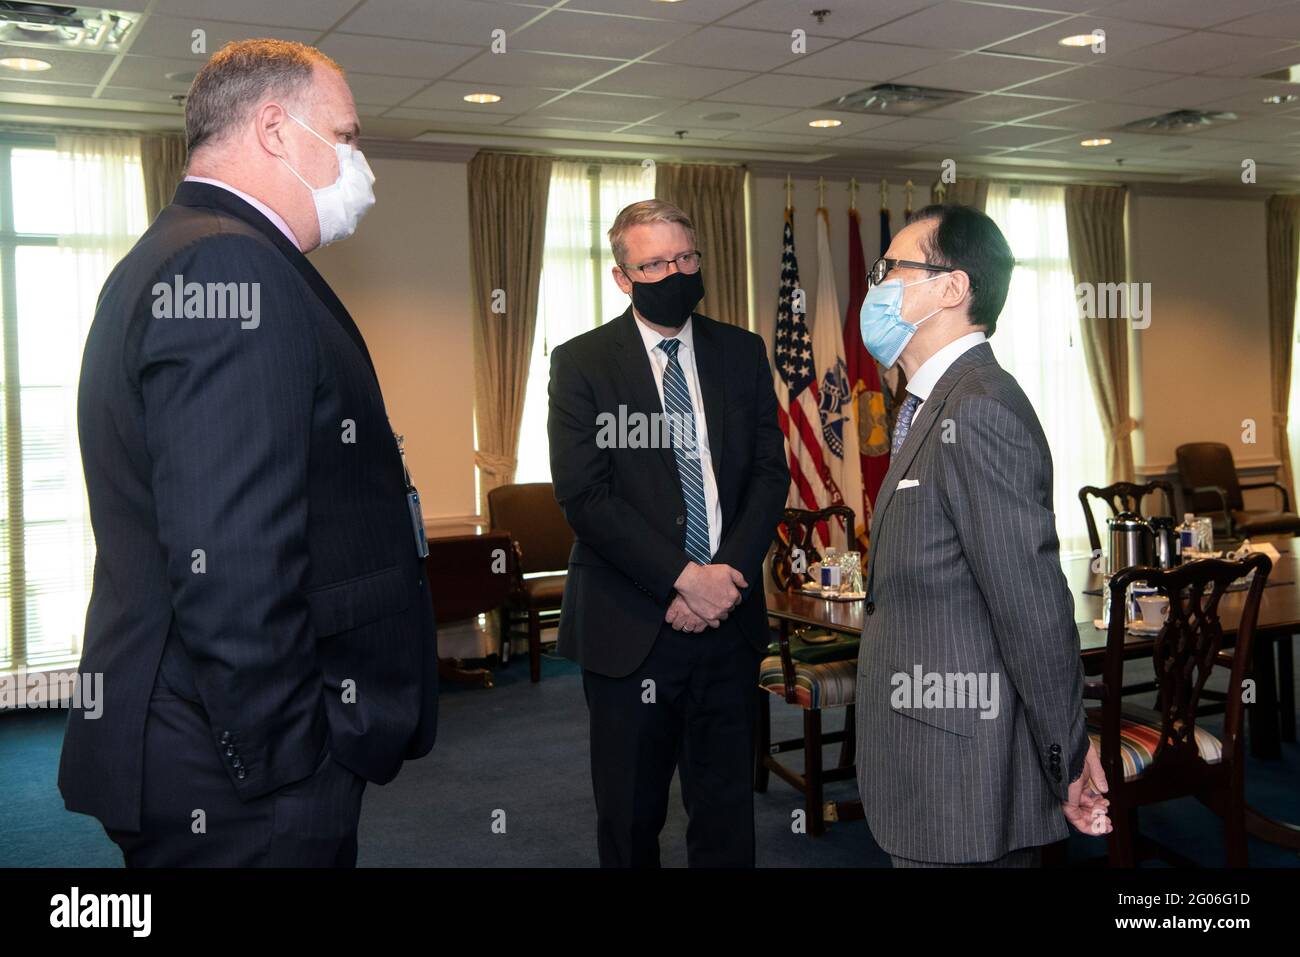 Reportage: Shigeri Kitamura, consulente giapponese per la sicurezza nazionale, arriva al Pentagono per un incontro con il Segretario della Difesa, il Pentagono, Washington, D.C., 23 settembre, 2020. Foto Stock